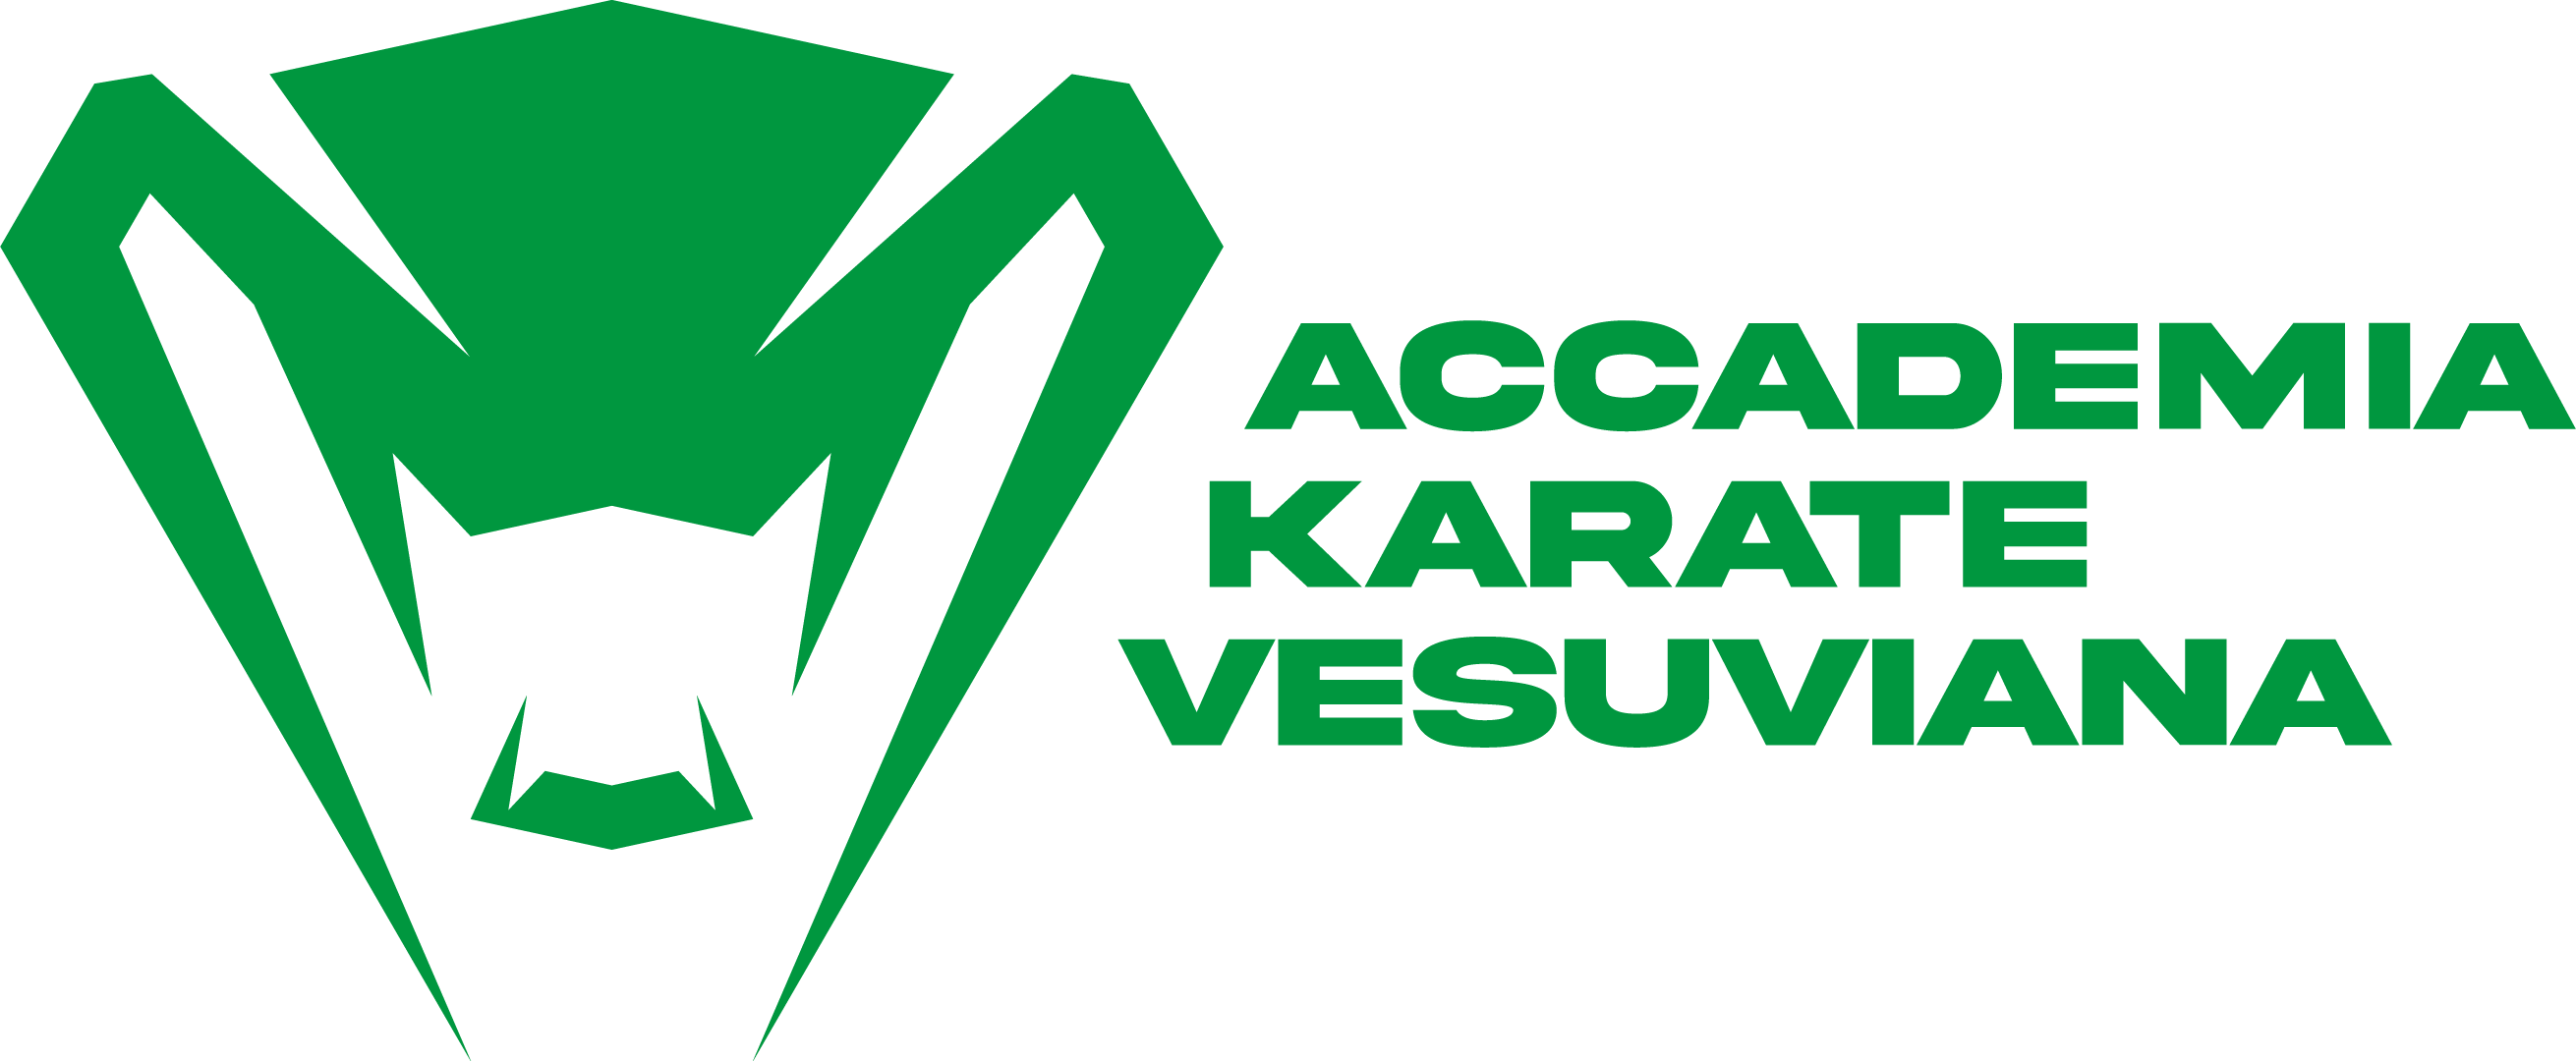 Accademia Karate Vesuviana